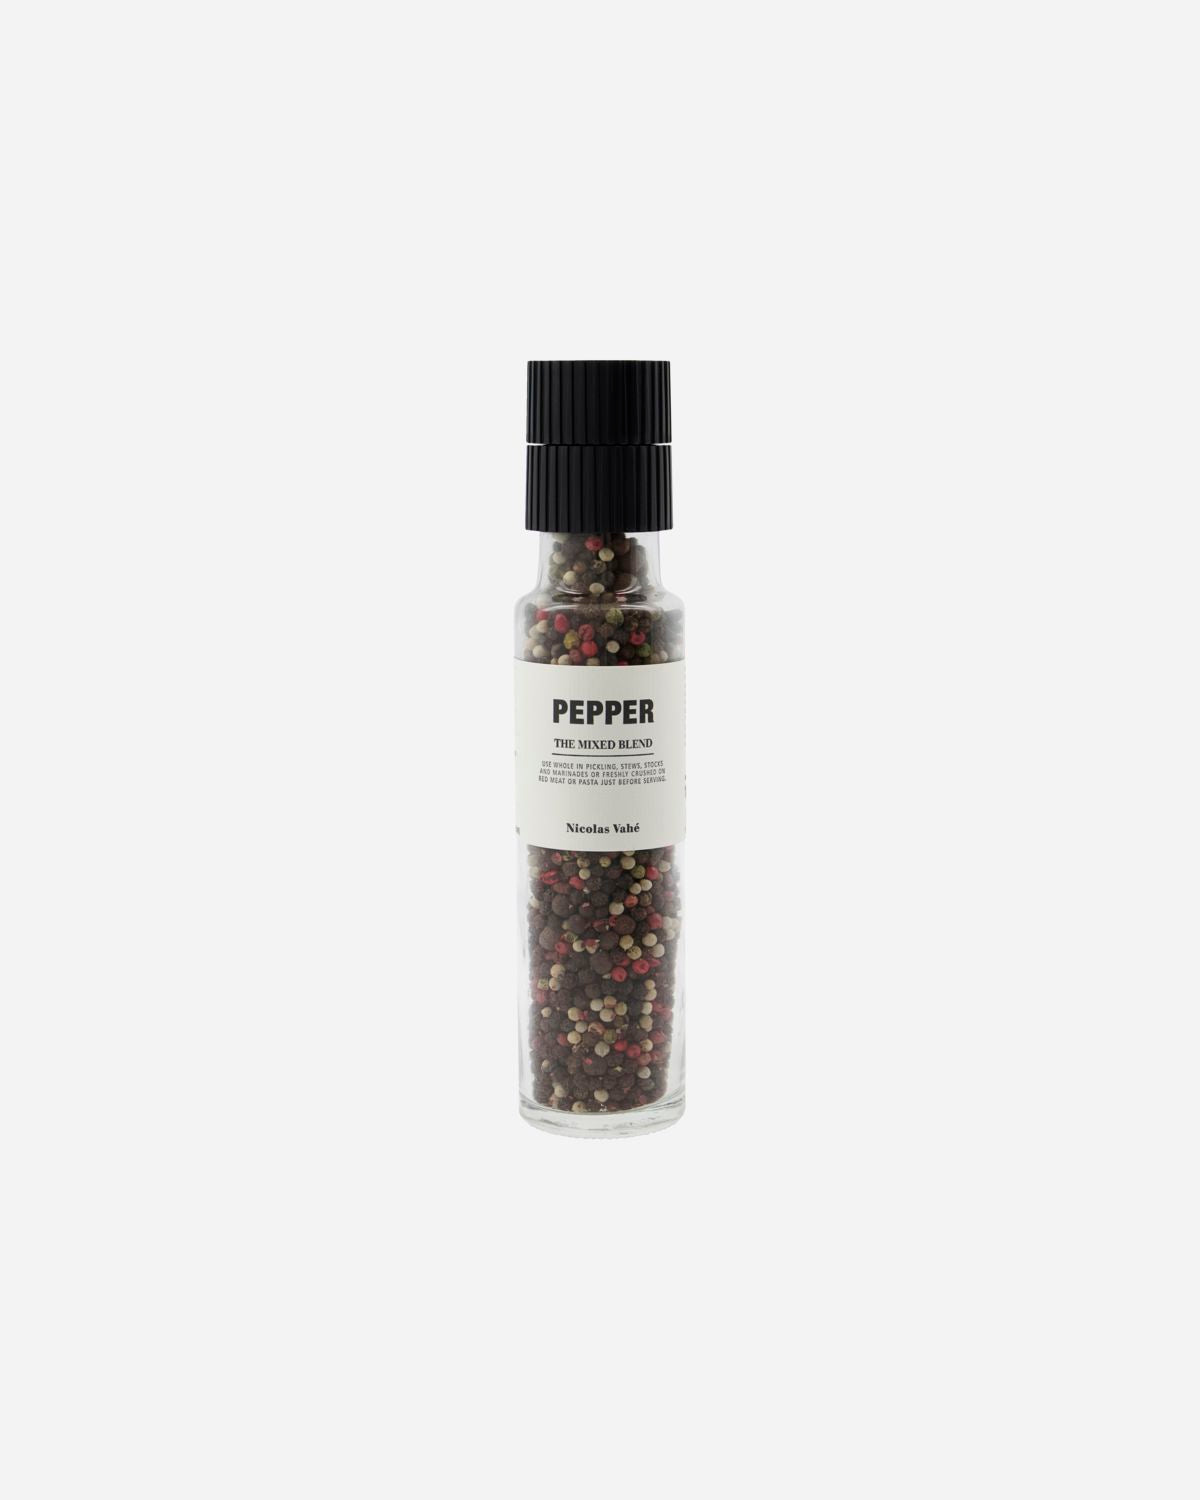 Pepper, The mixed blend